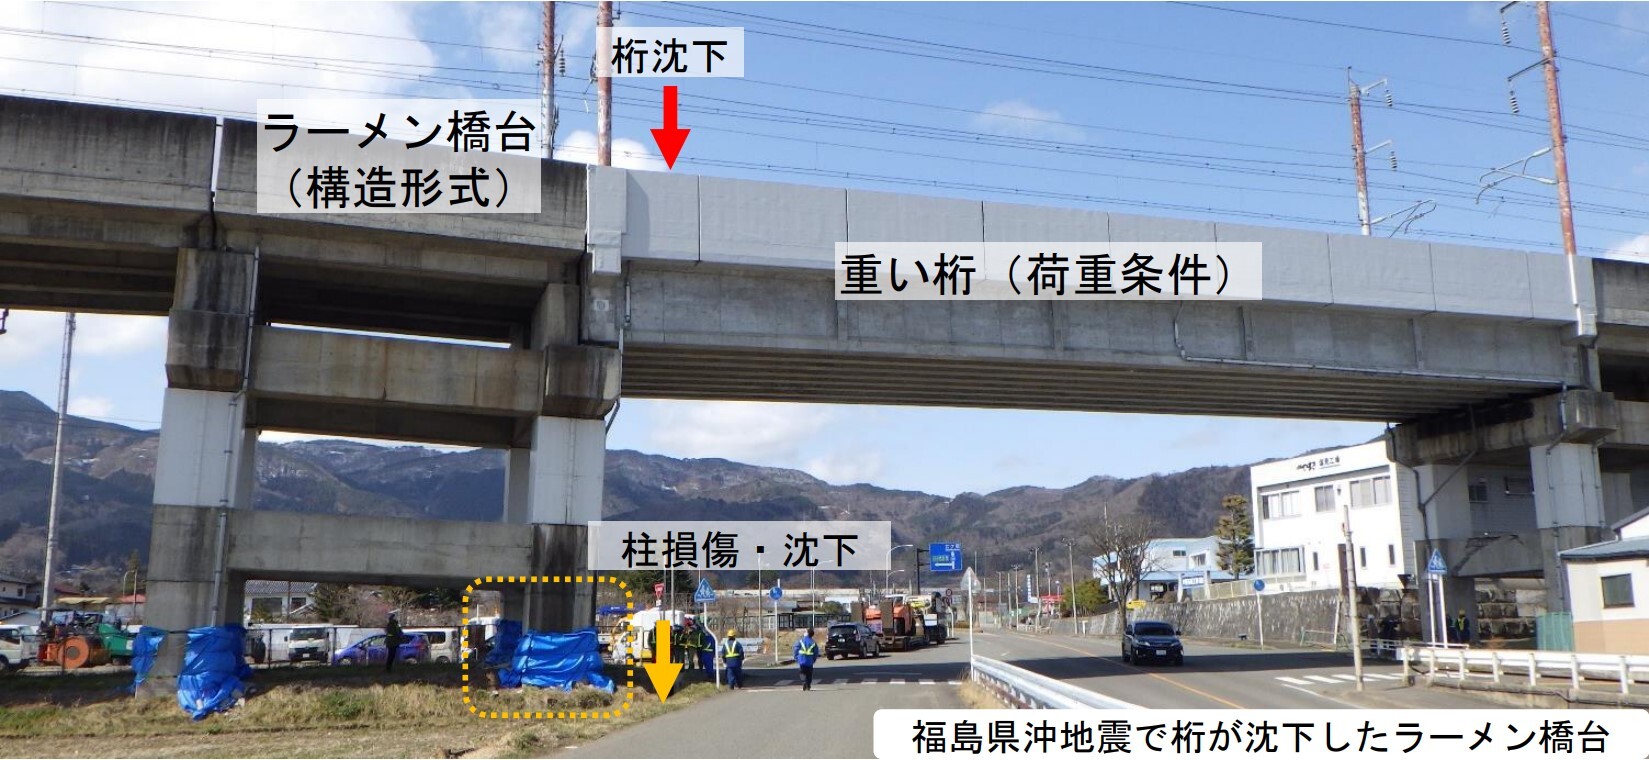 福島県沖地震によるラーメン橋台の損傷